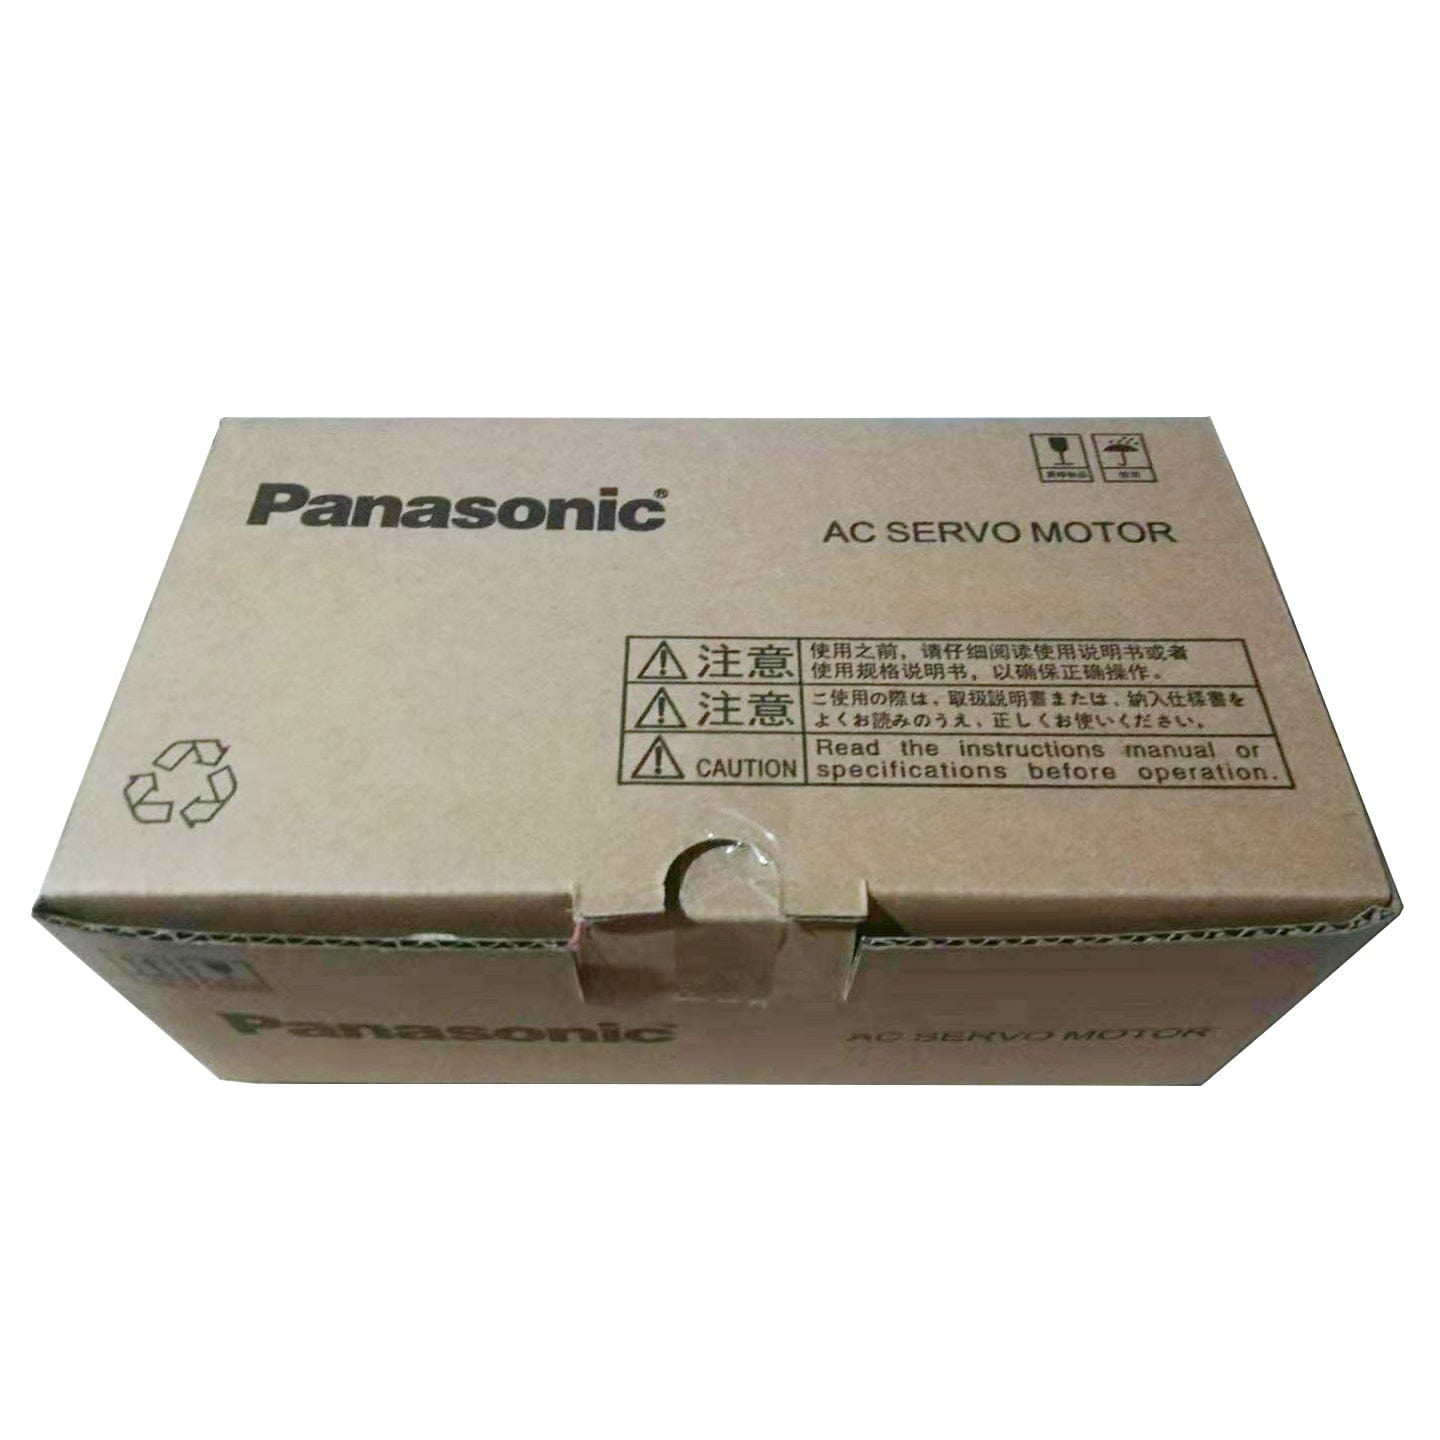 Panasonic MHMJ042G1D